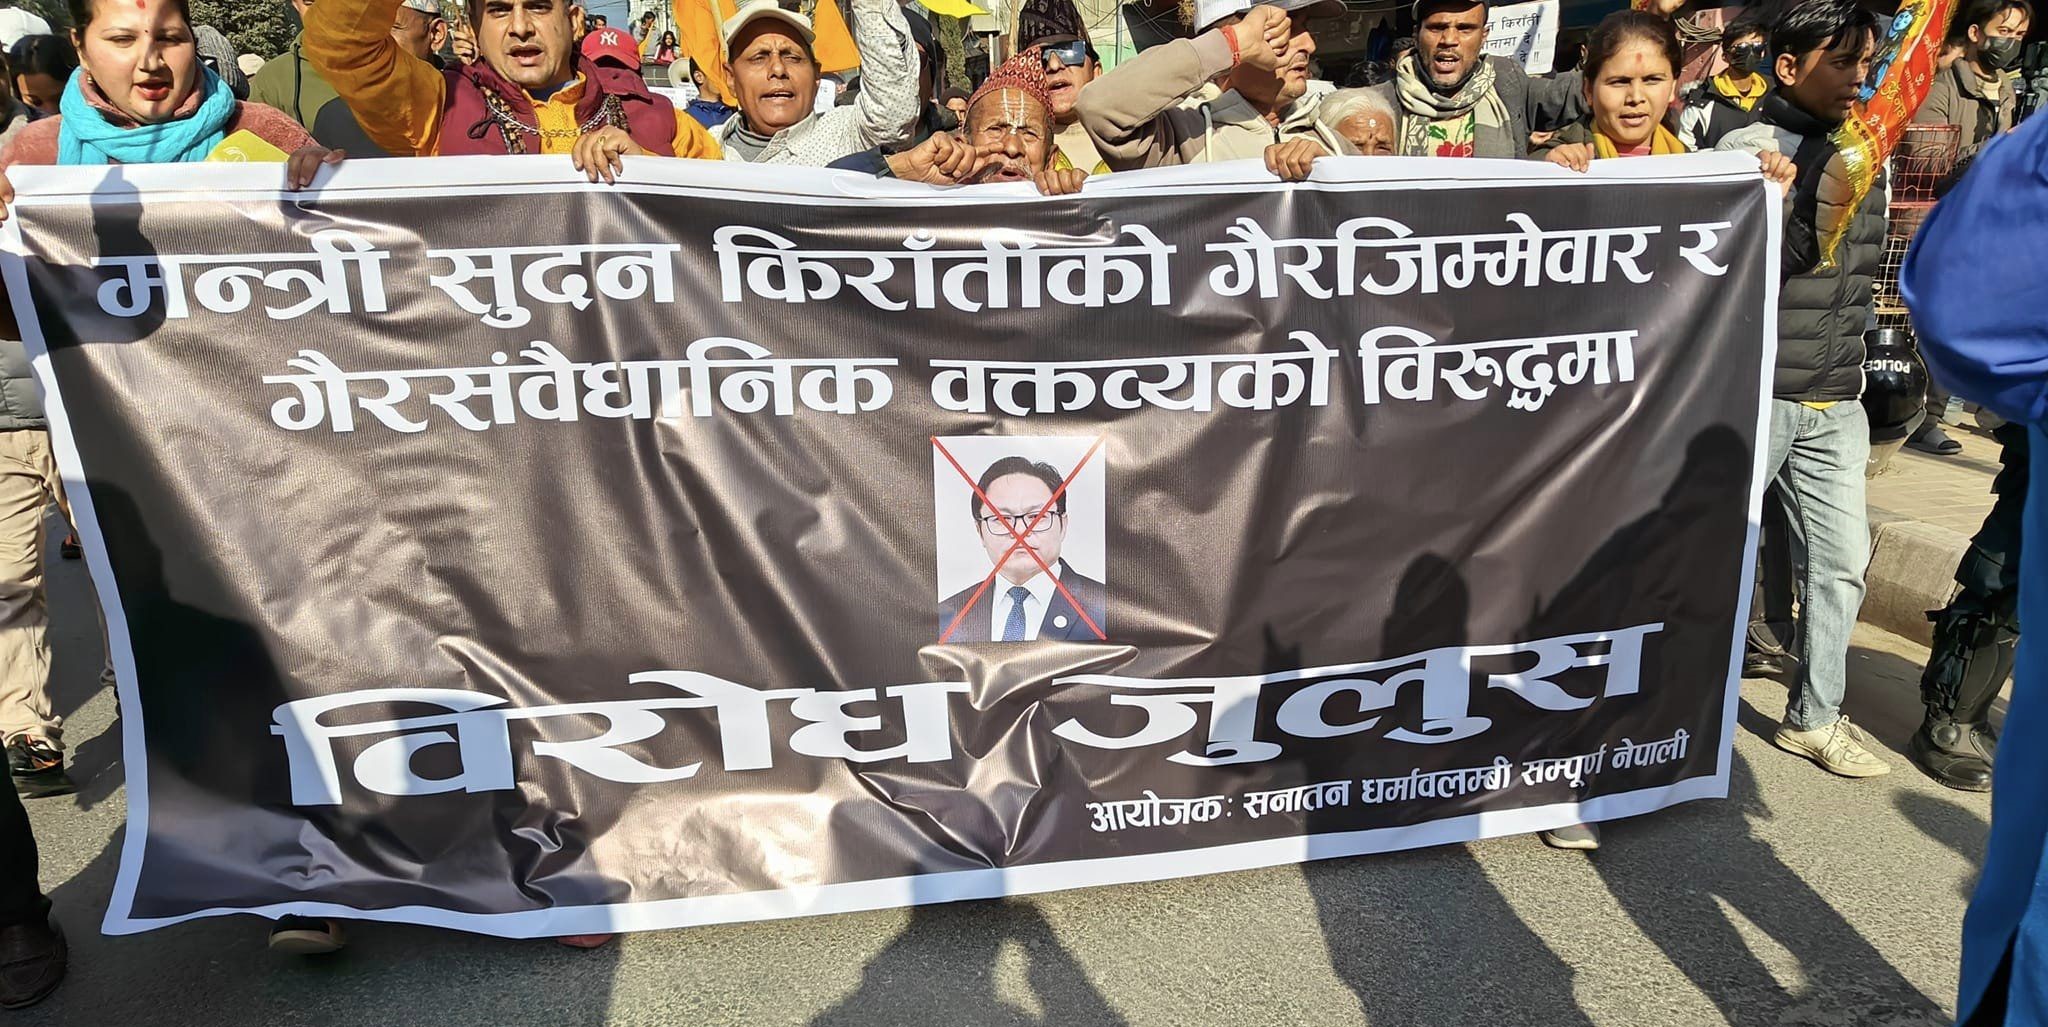 मन्त्री किराँतीको अभिव्यक्तिको विरोधमा काठमाडौंमा प्रदर्शन